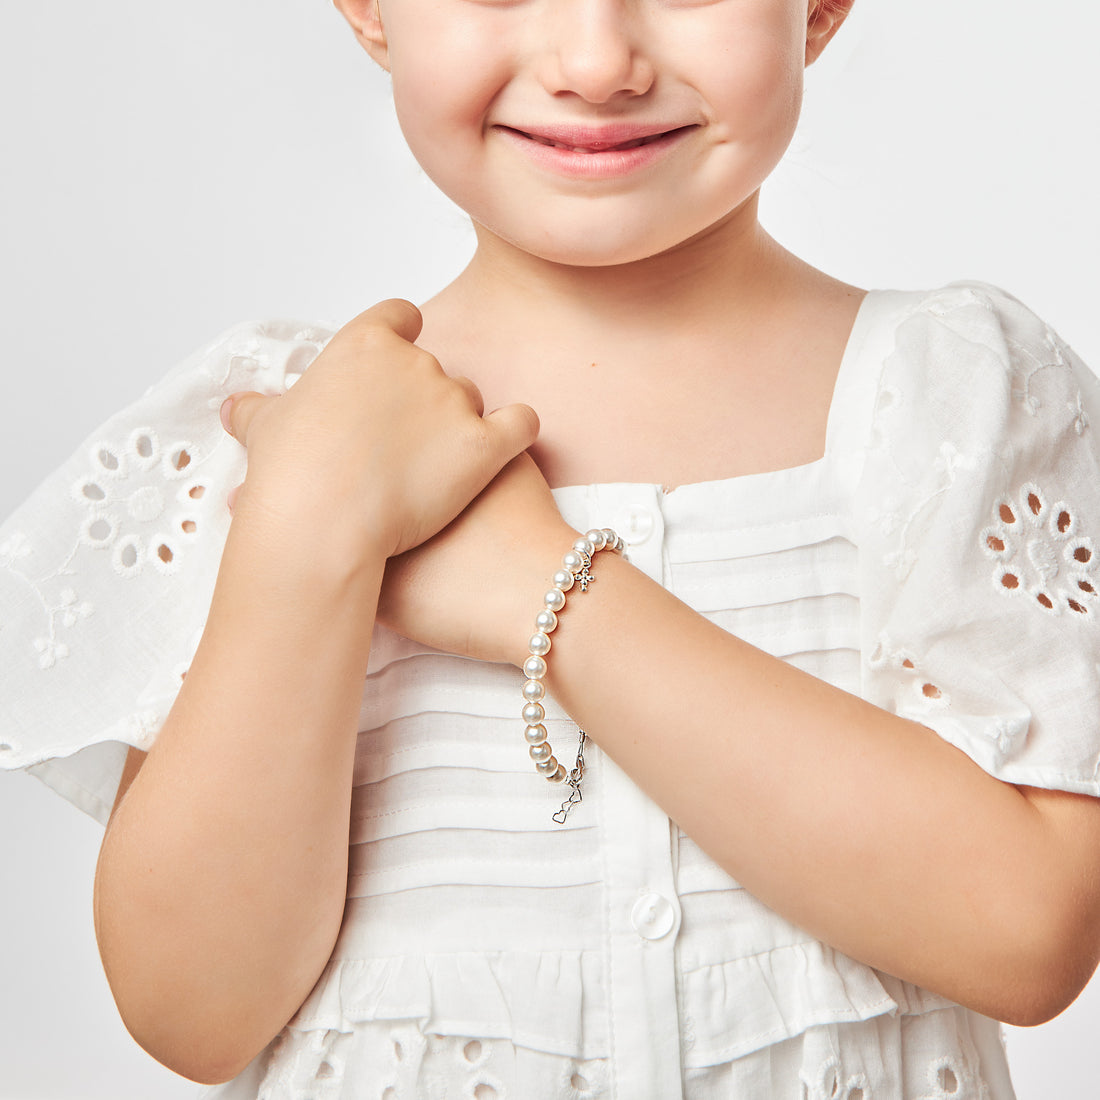 Sterling Silver Textured Bells Adjustable Childrens Bangle Bracelet 6 inch  | eBay